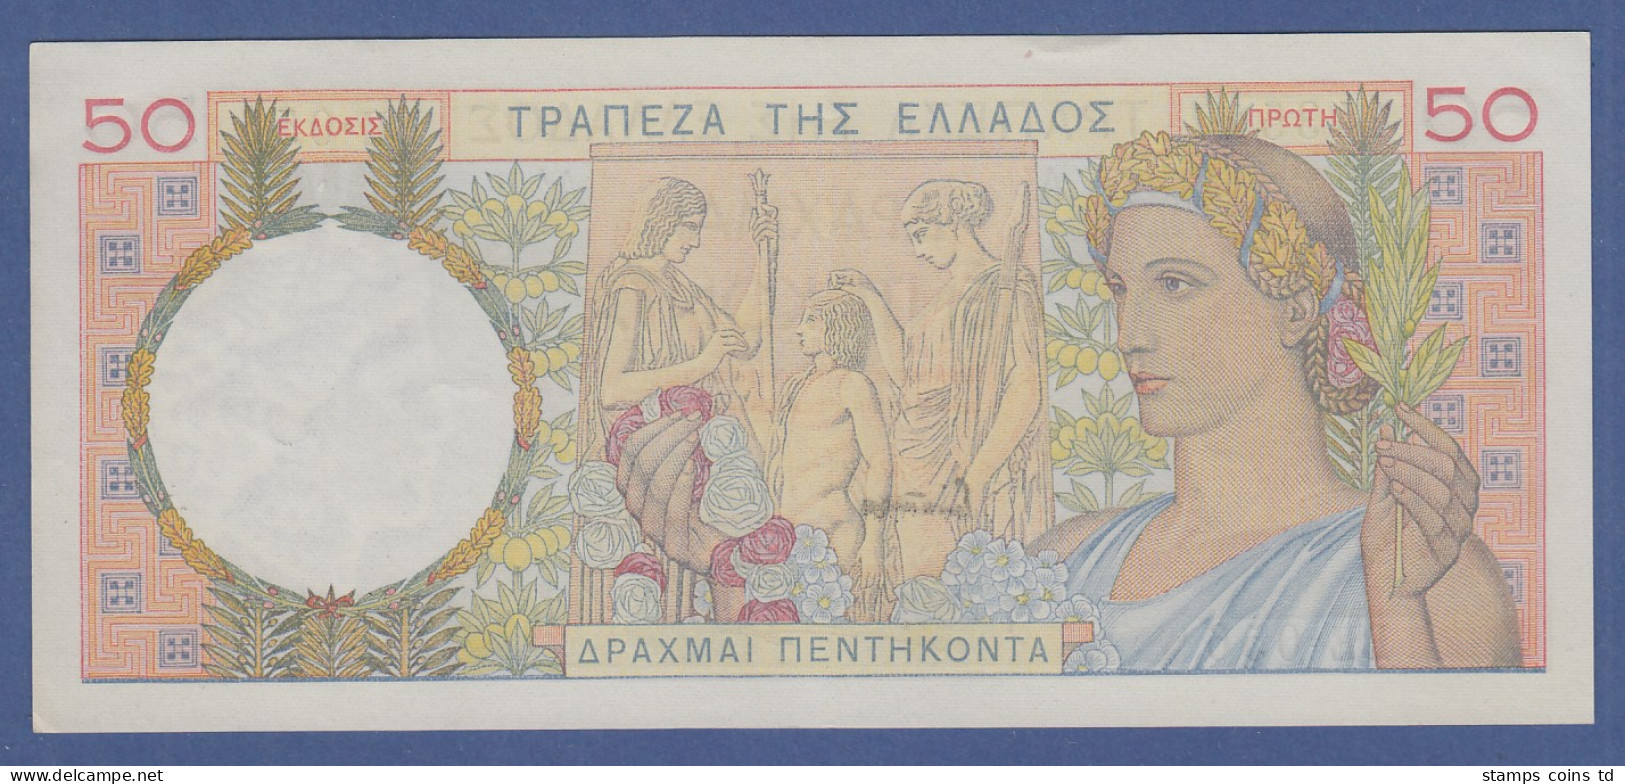 Banknote Griechenland 50 Drachmen 1935 - Griechenland